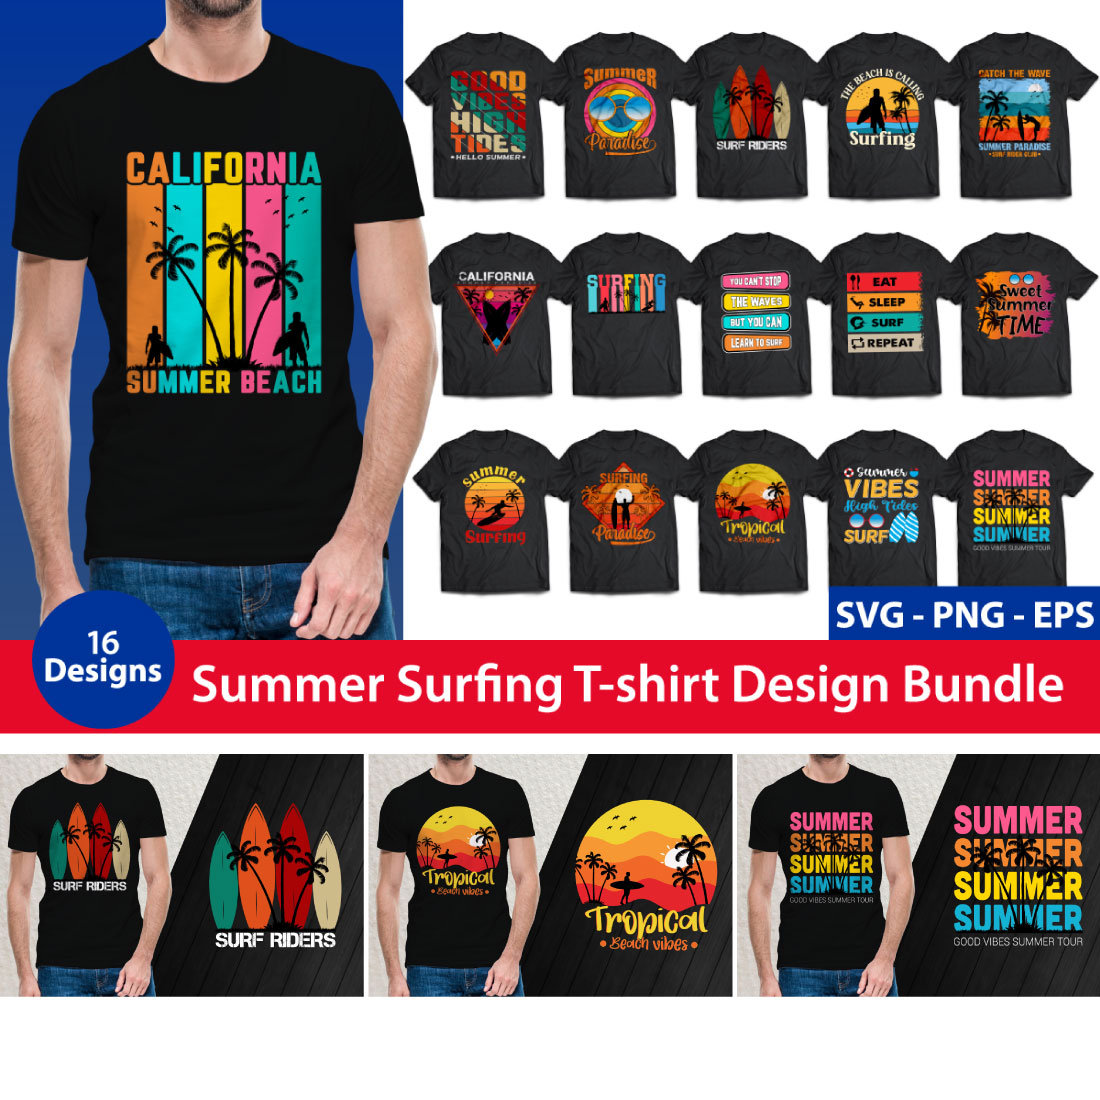 Summer Surfing T-shirt Design Bundle 16 Designs cover image.